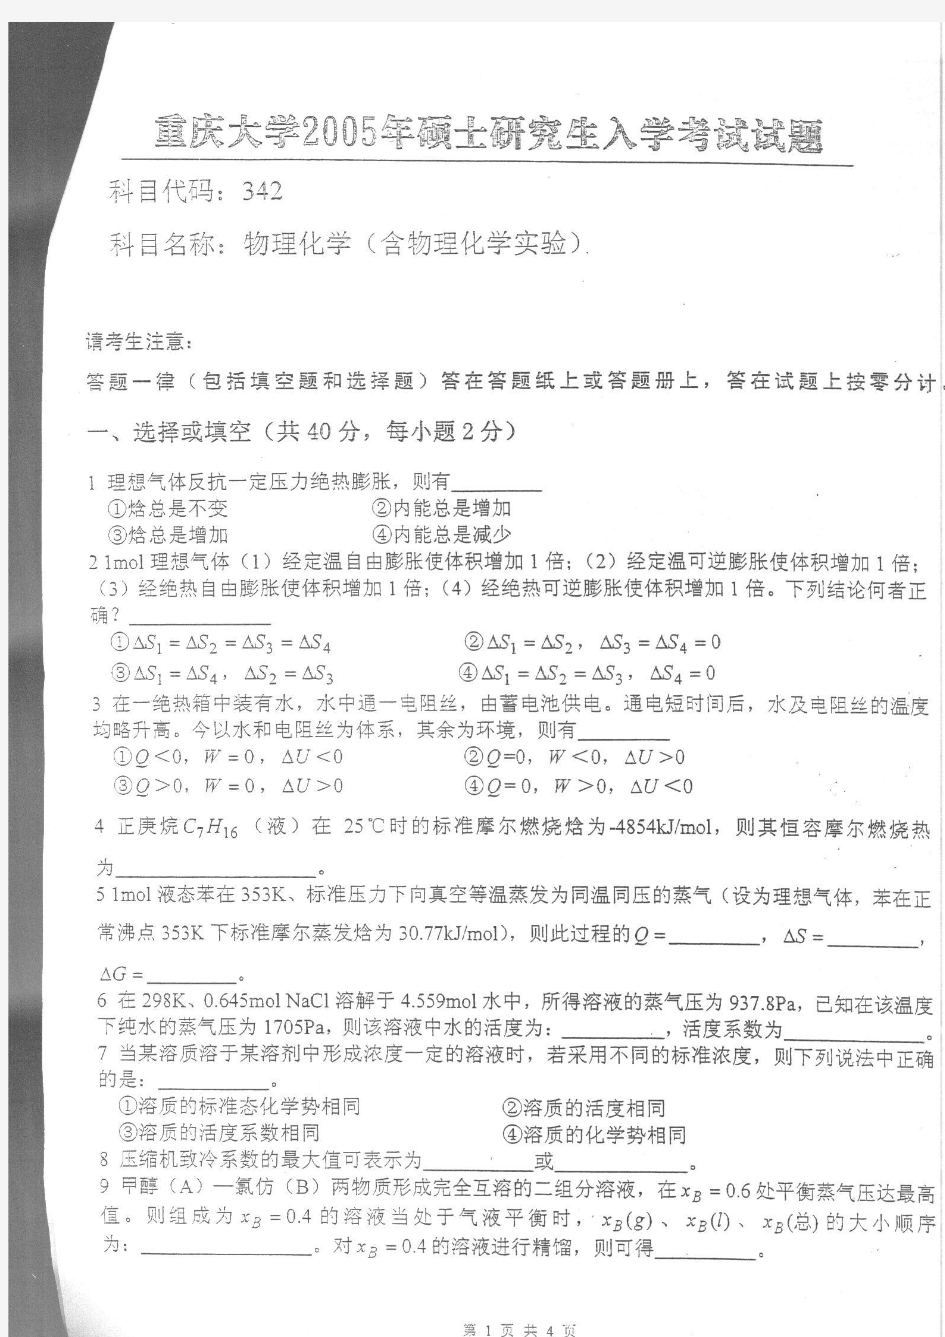 2005年重庆大学硕士研究生物理化学(含物理化学实验)入学考试考试